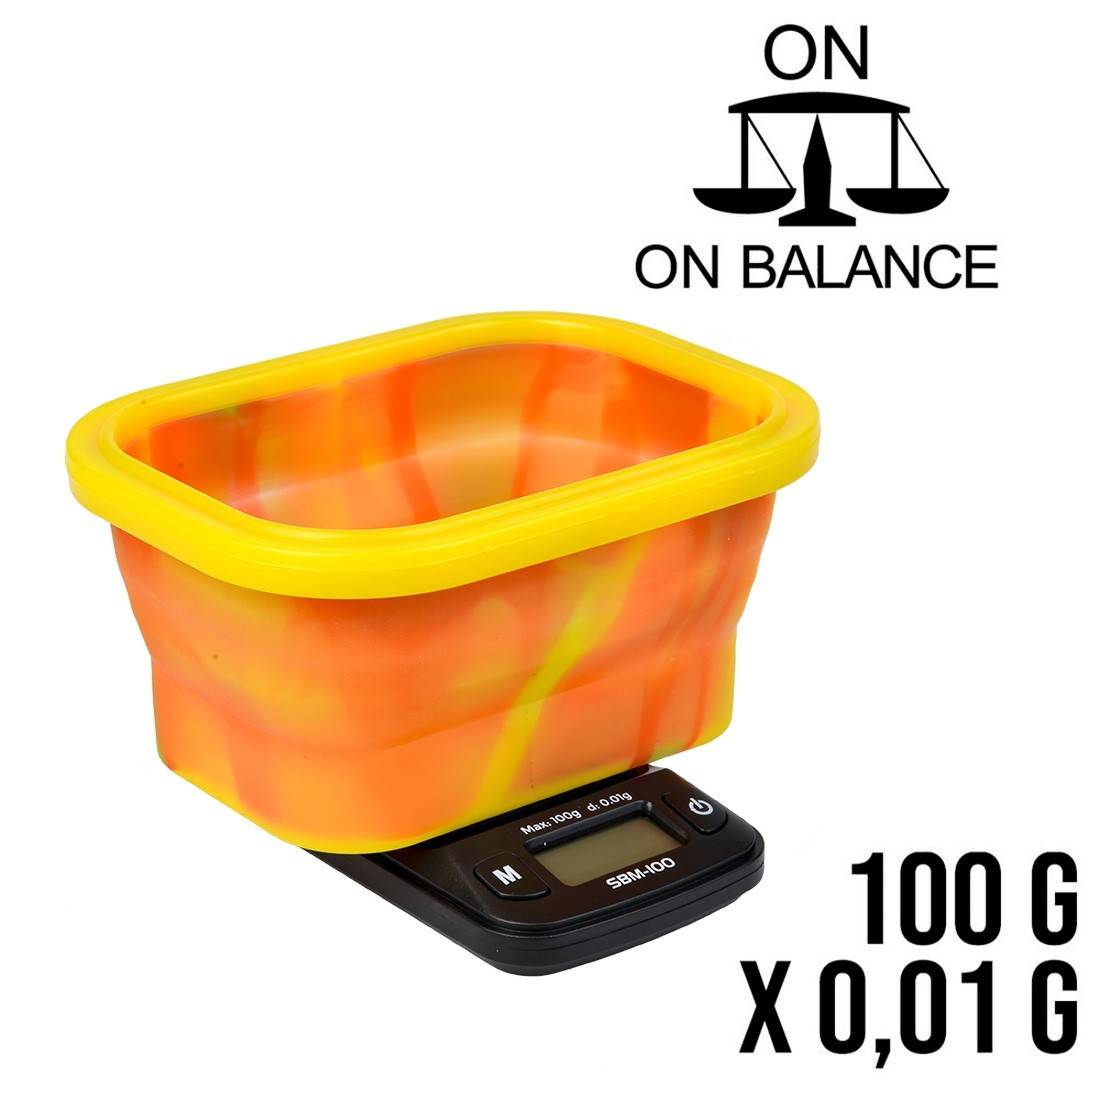 Balance de précision SBM-100 capacité 100G - On Balance